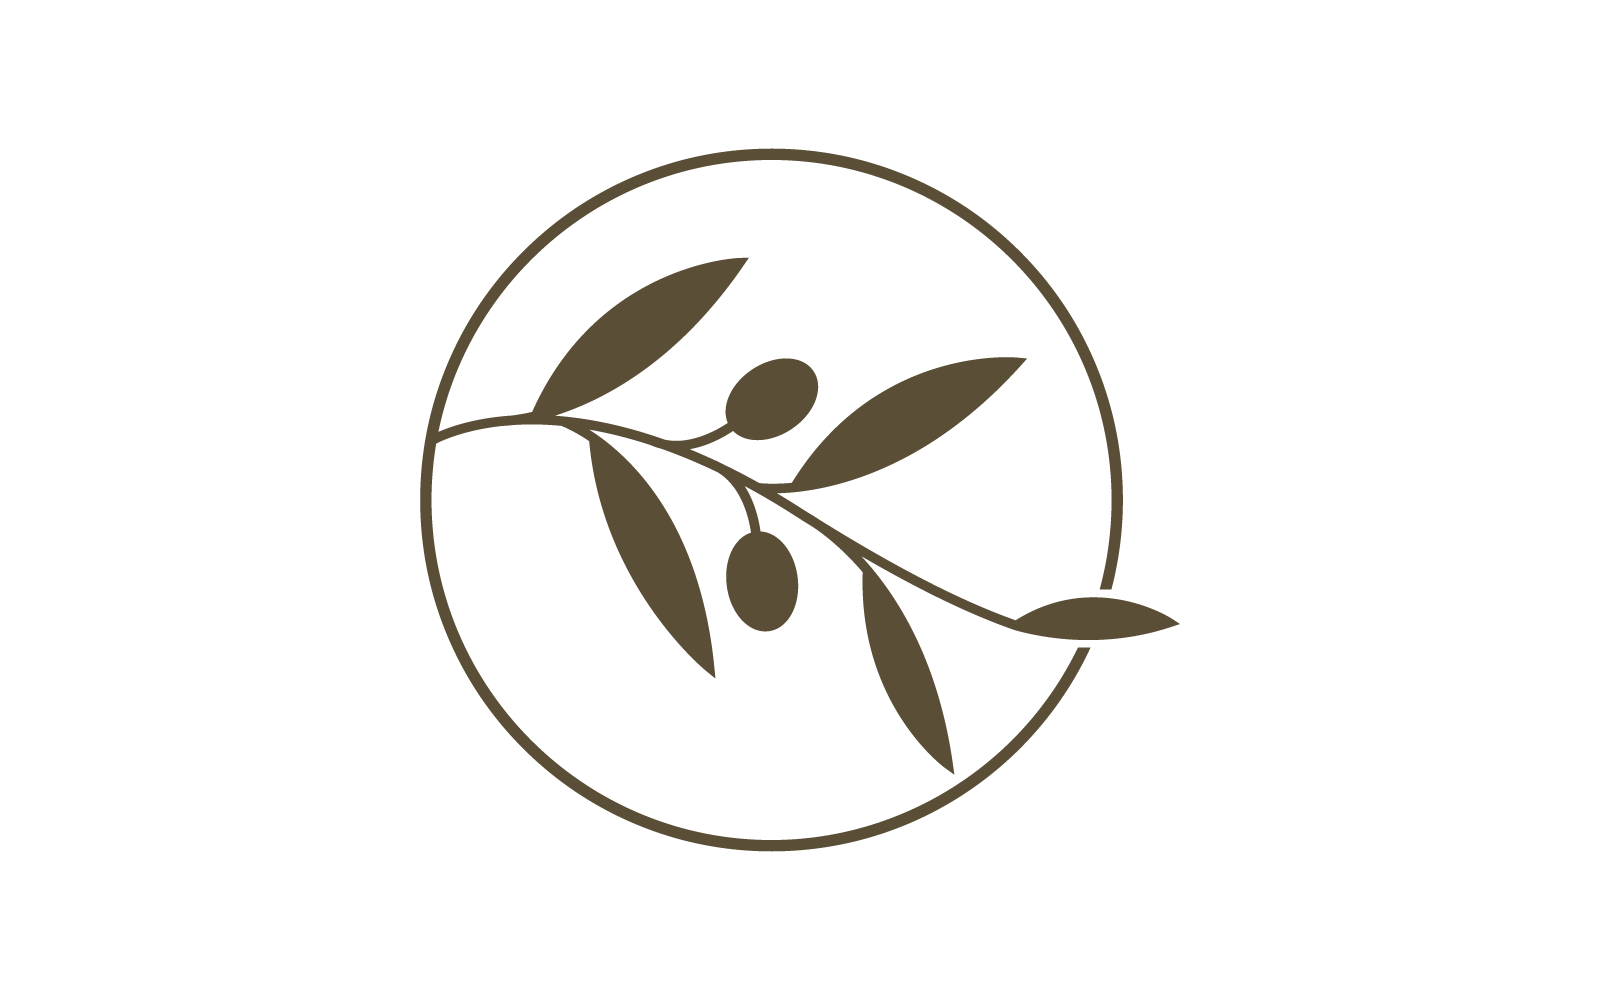 Olive illustration logo vector flat design template